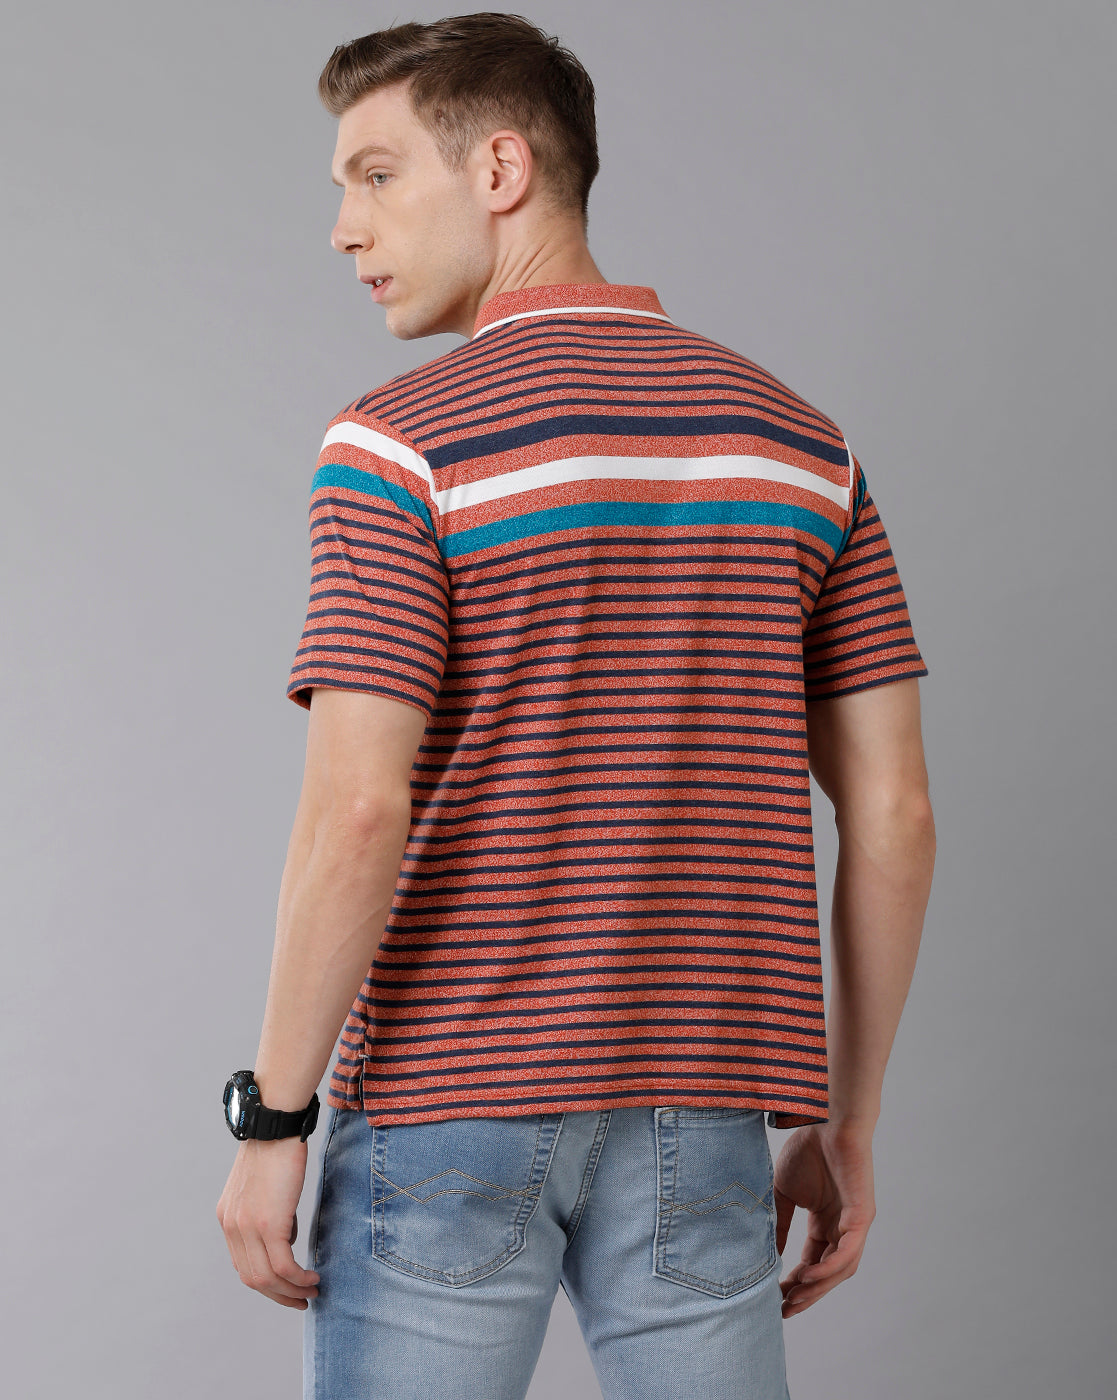 Classic Polo Men's Cotton Blend Striped Authentic Fit Multicolor T-Shirt | Mel - 218 B